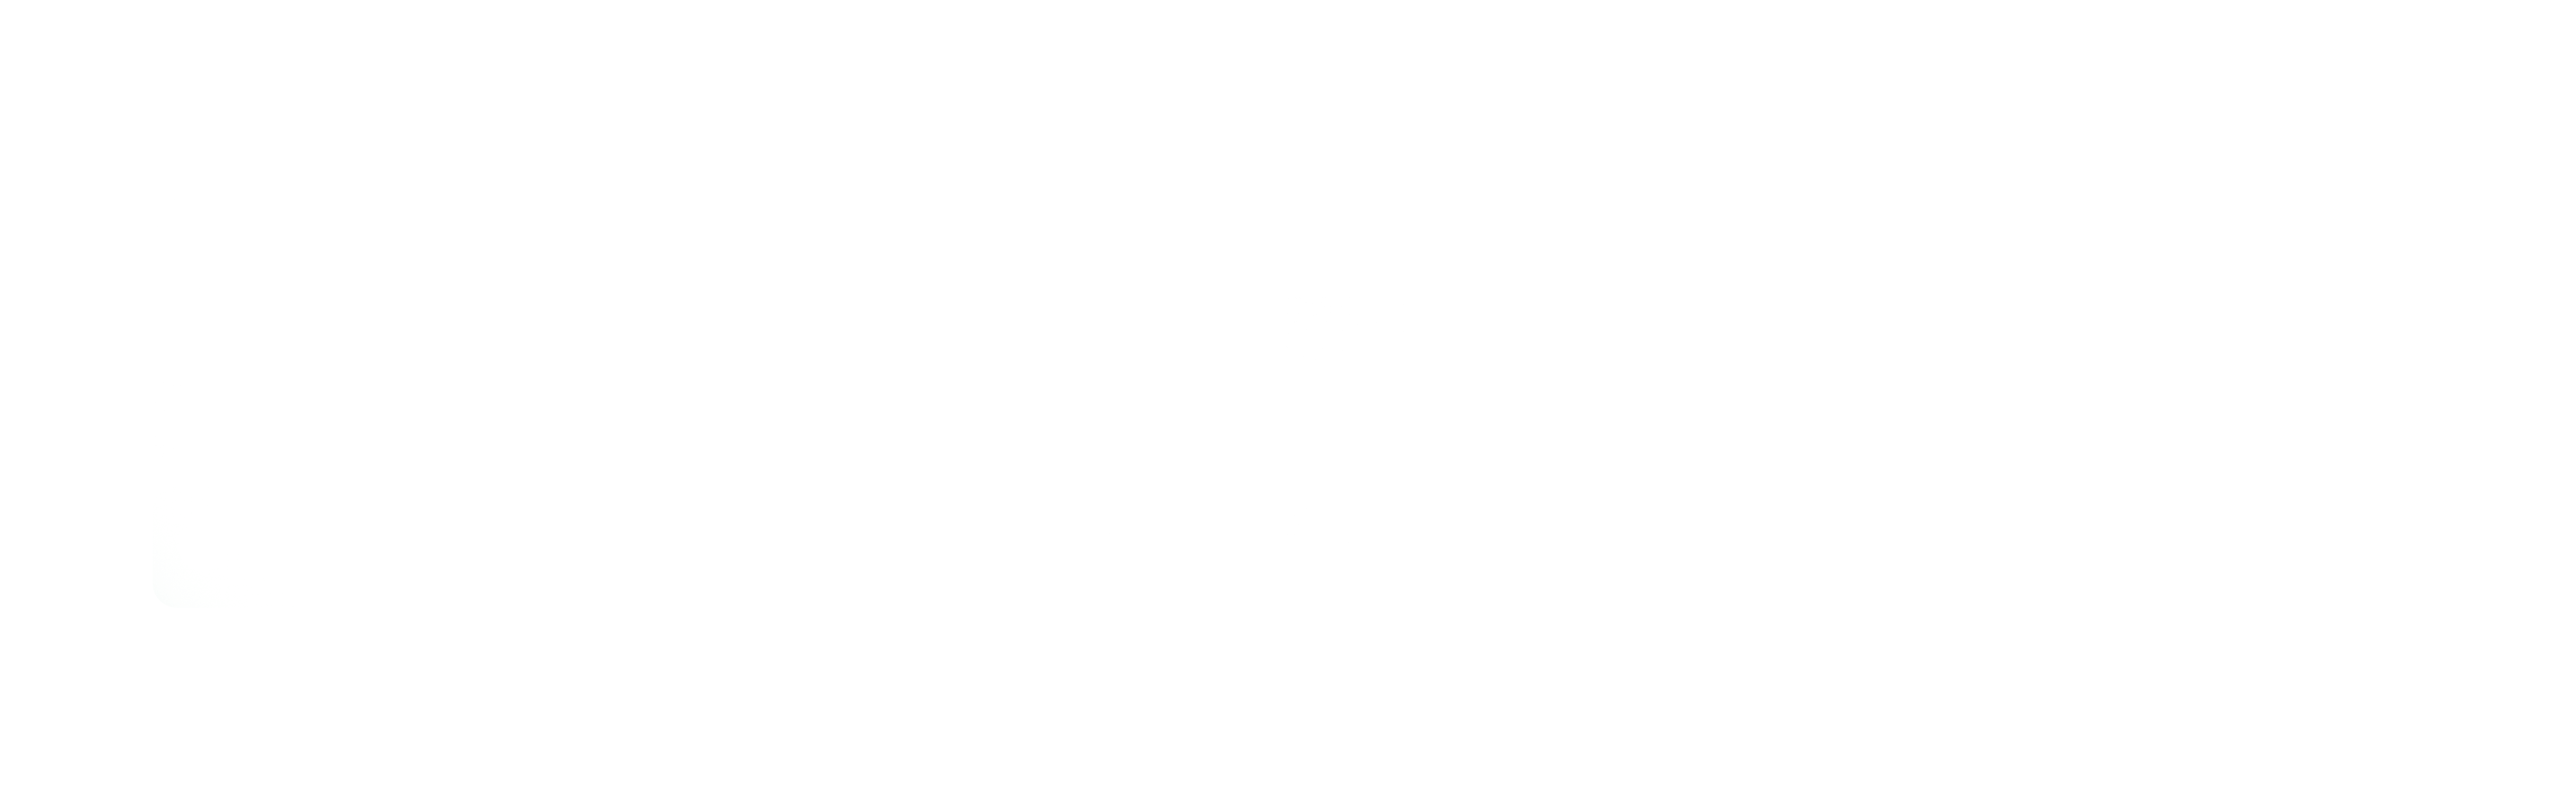 PC Patrol